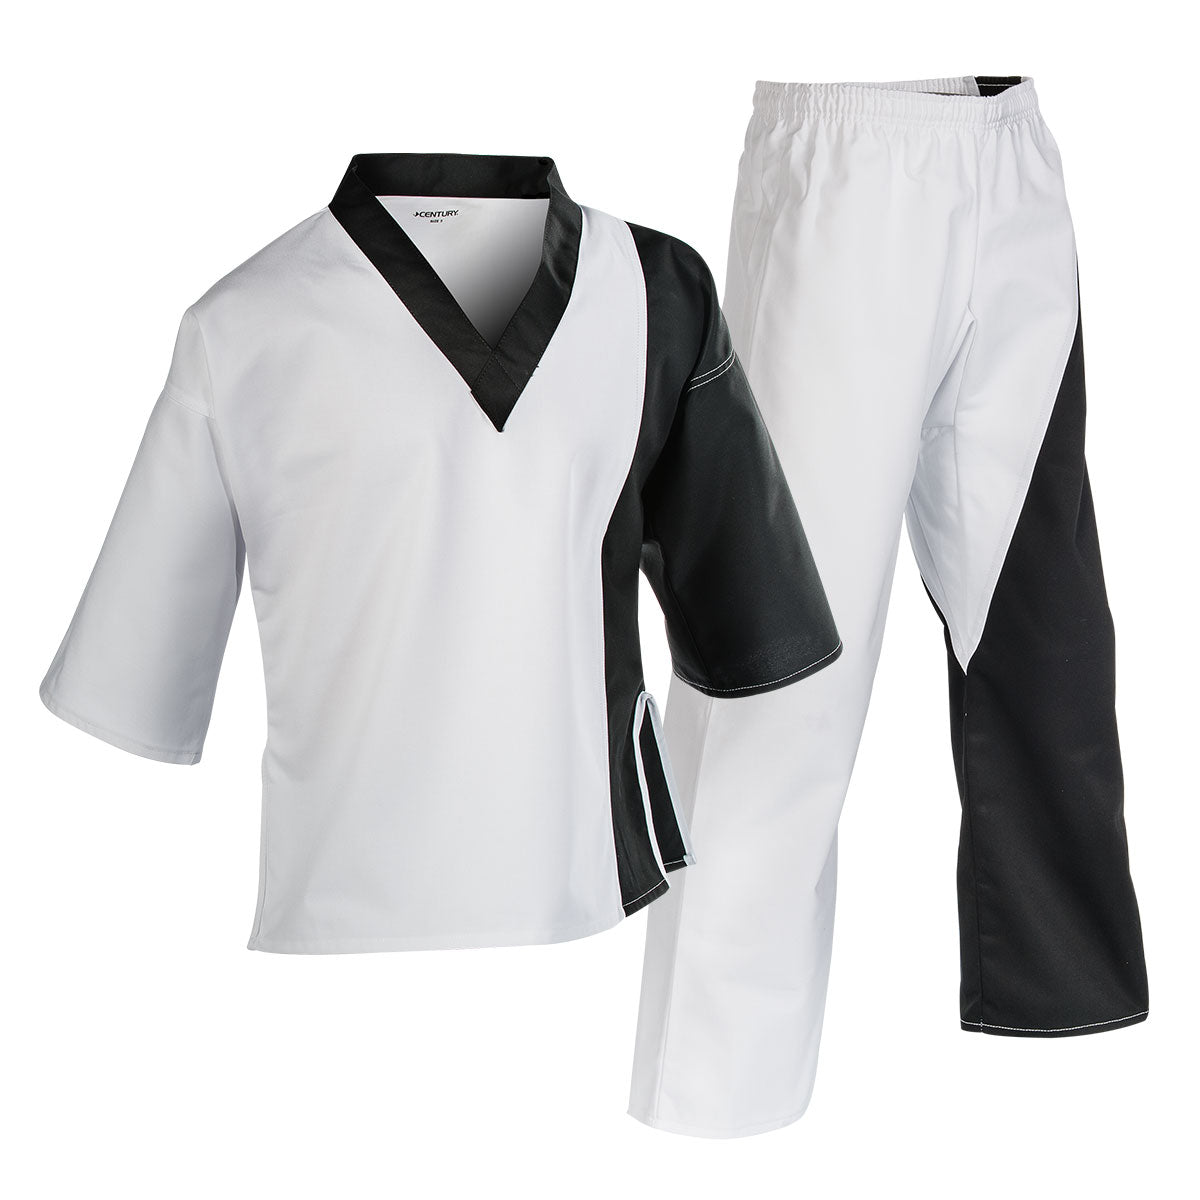 7 oz. Pullover Colorblock Splice Team Uniform Black/White